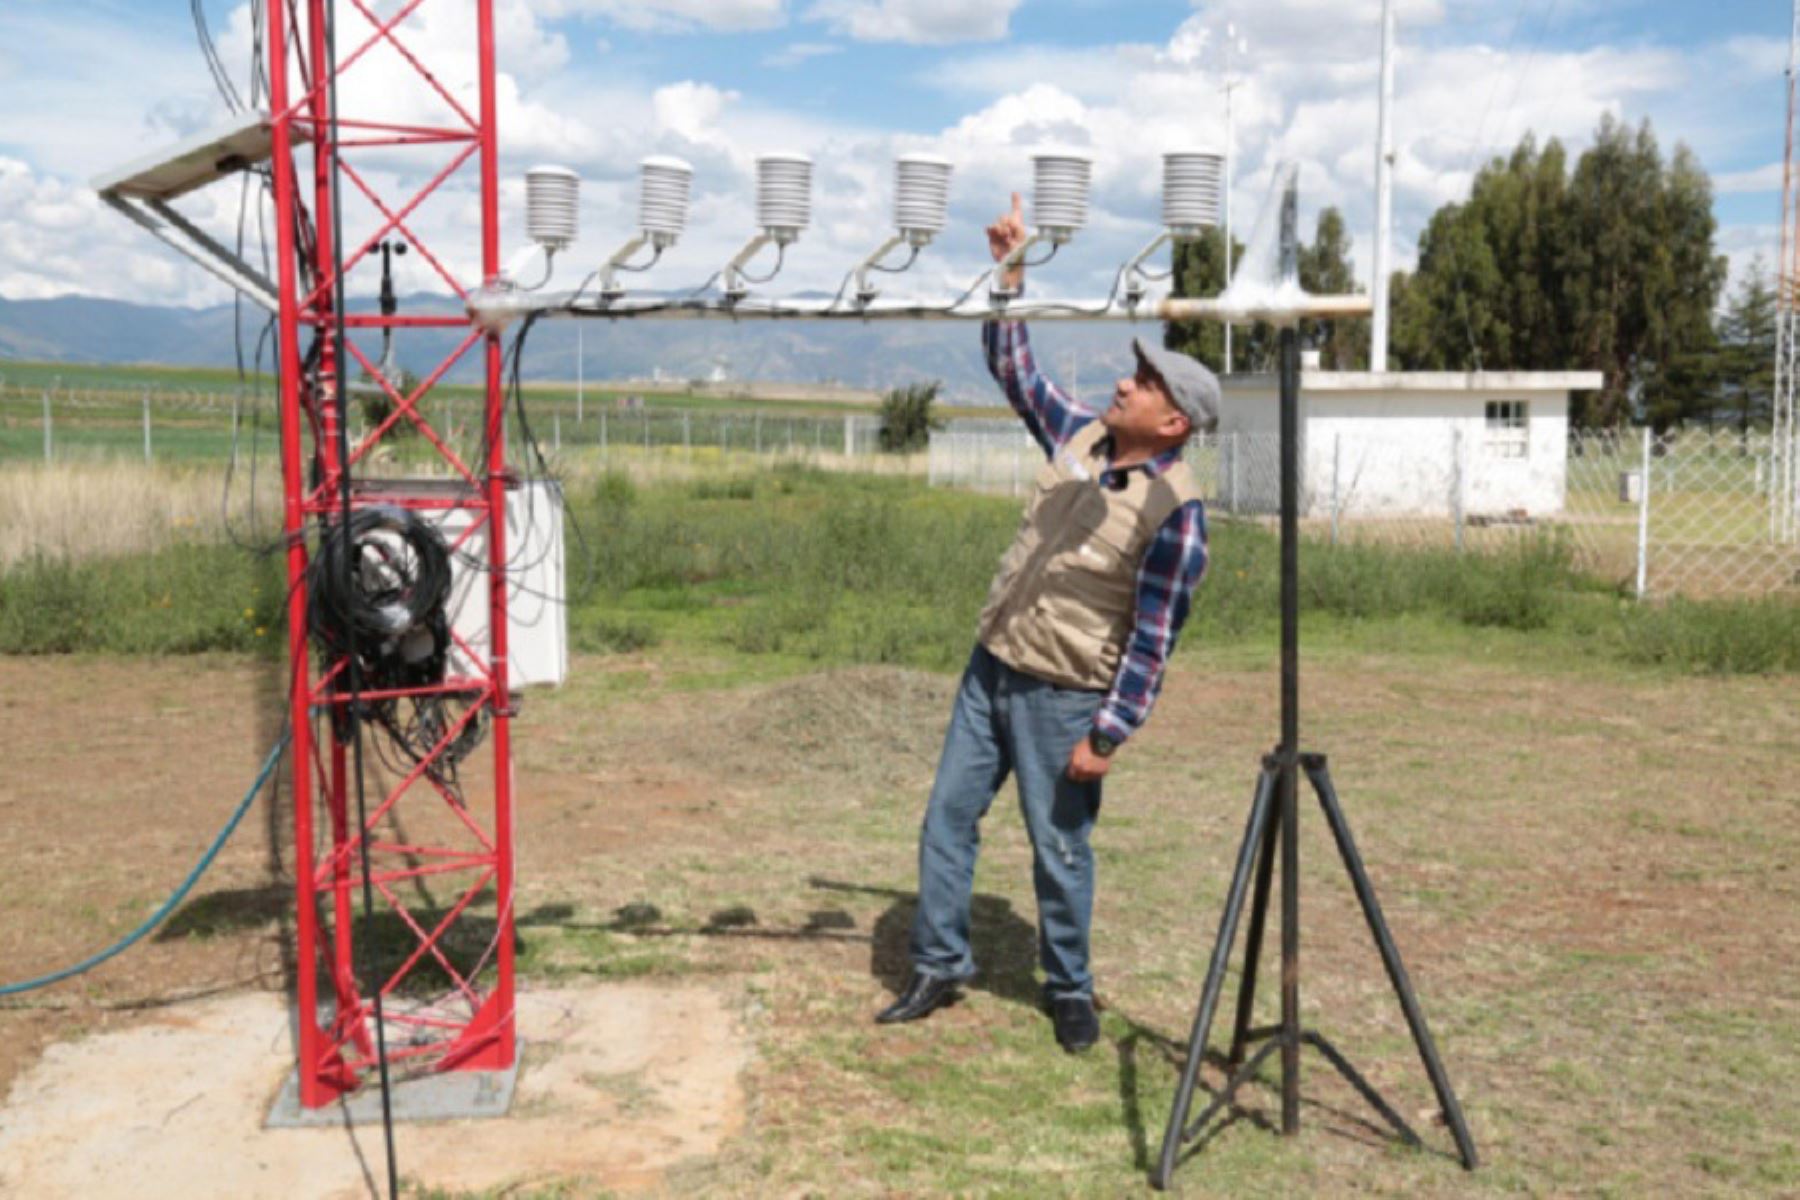 El Instituto Geofísico del Perú (IGP), organismo adscrito al Ministerio del Ambiente, implementará un conjunto de sensores especializados y modelos computarizados para estudiar y comprender los mecanismos dinámicos que generan la ocurrencia de tormentas en la región andina, especialmente en el valle del Mantaro. Foto: IGP